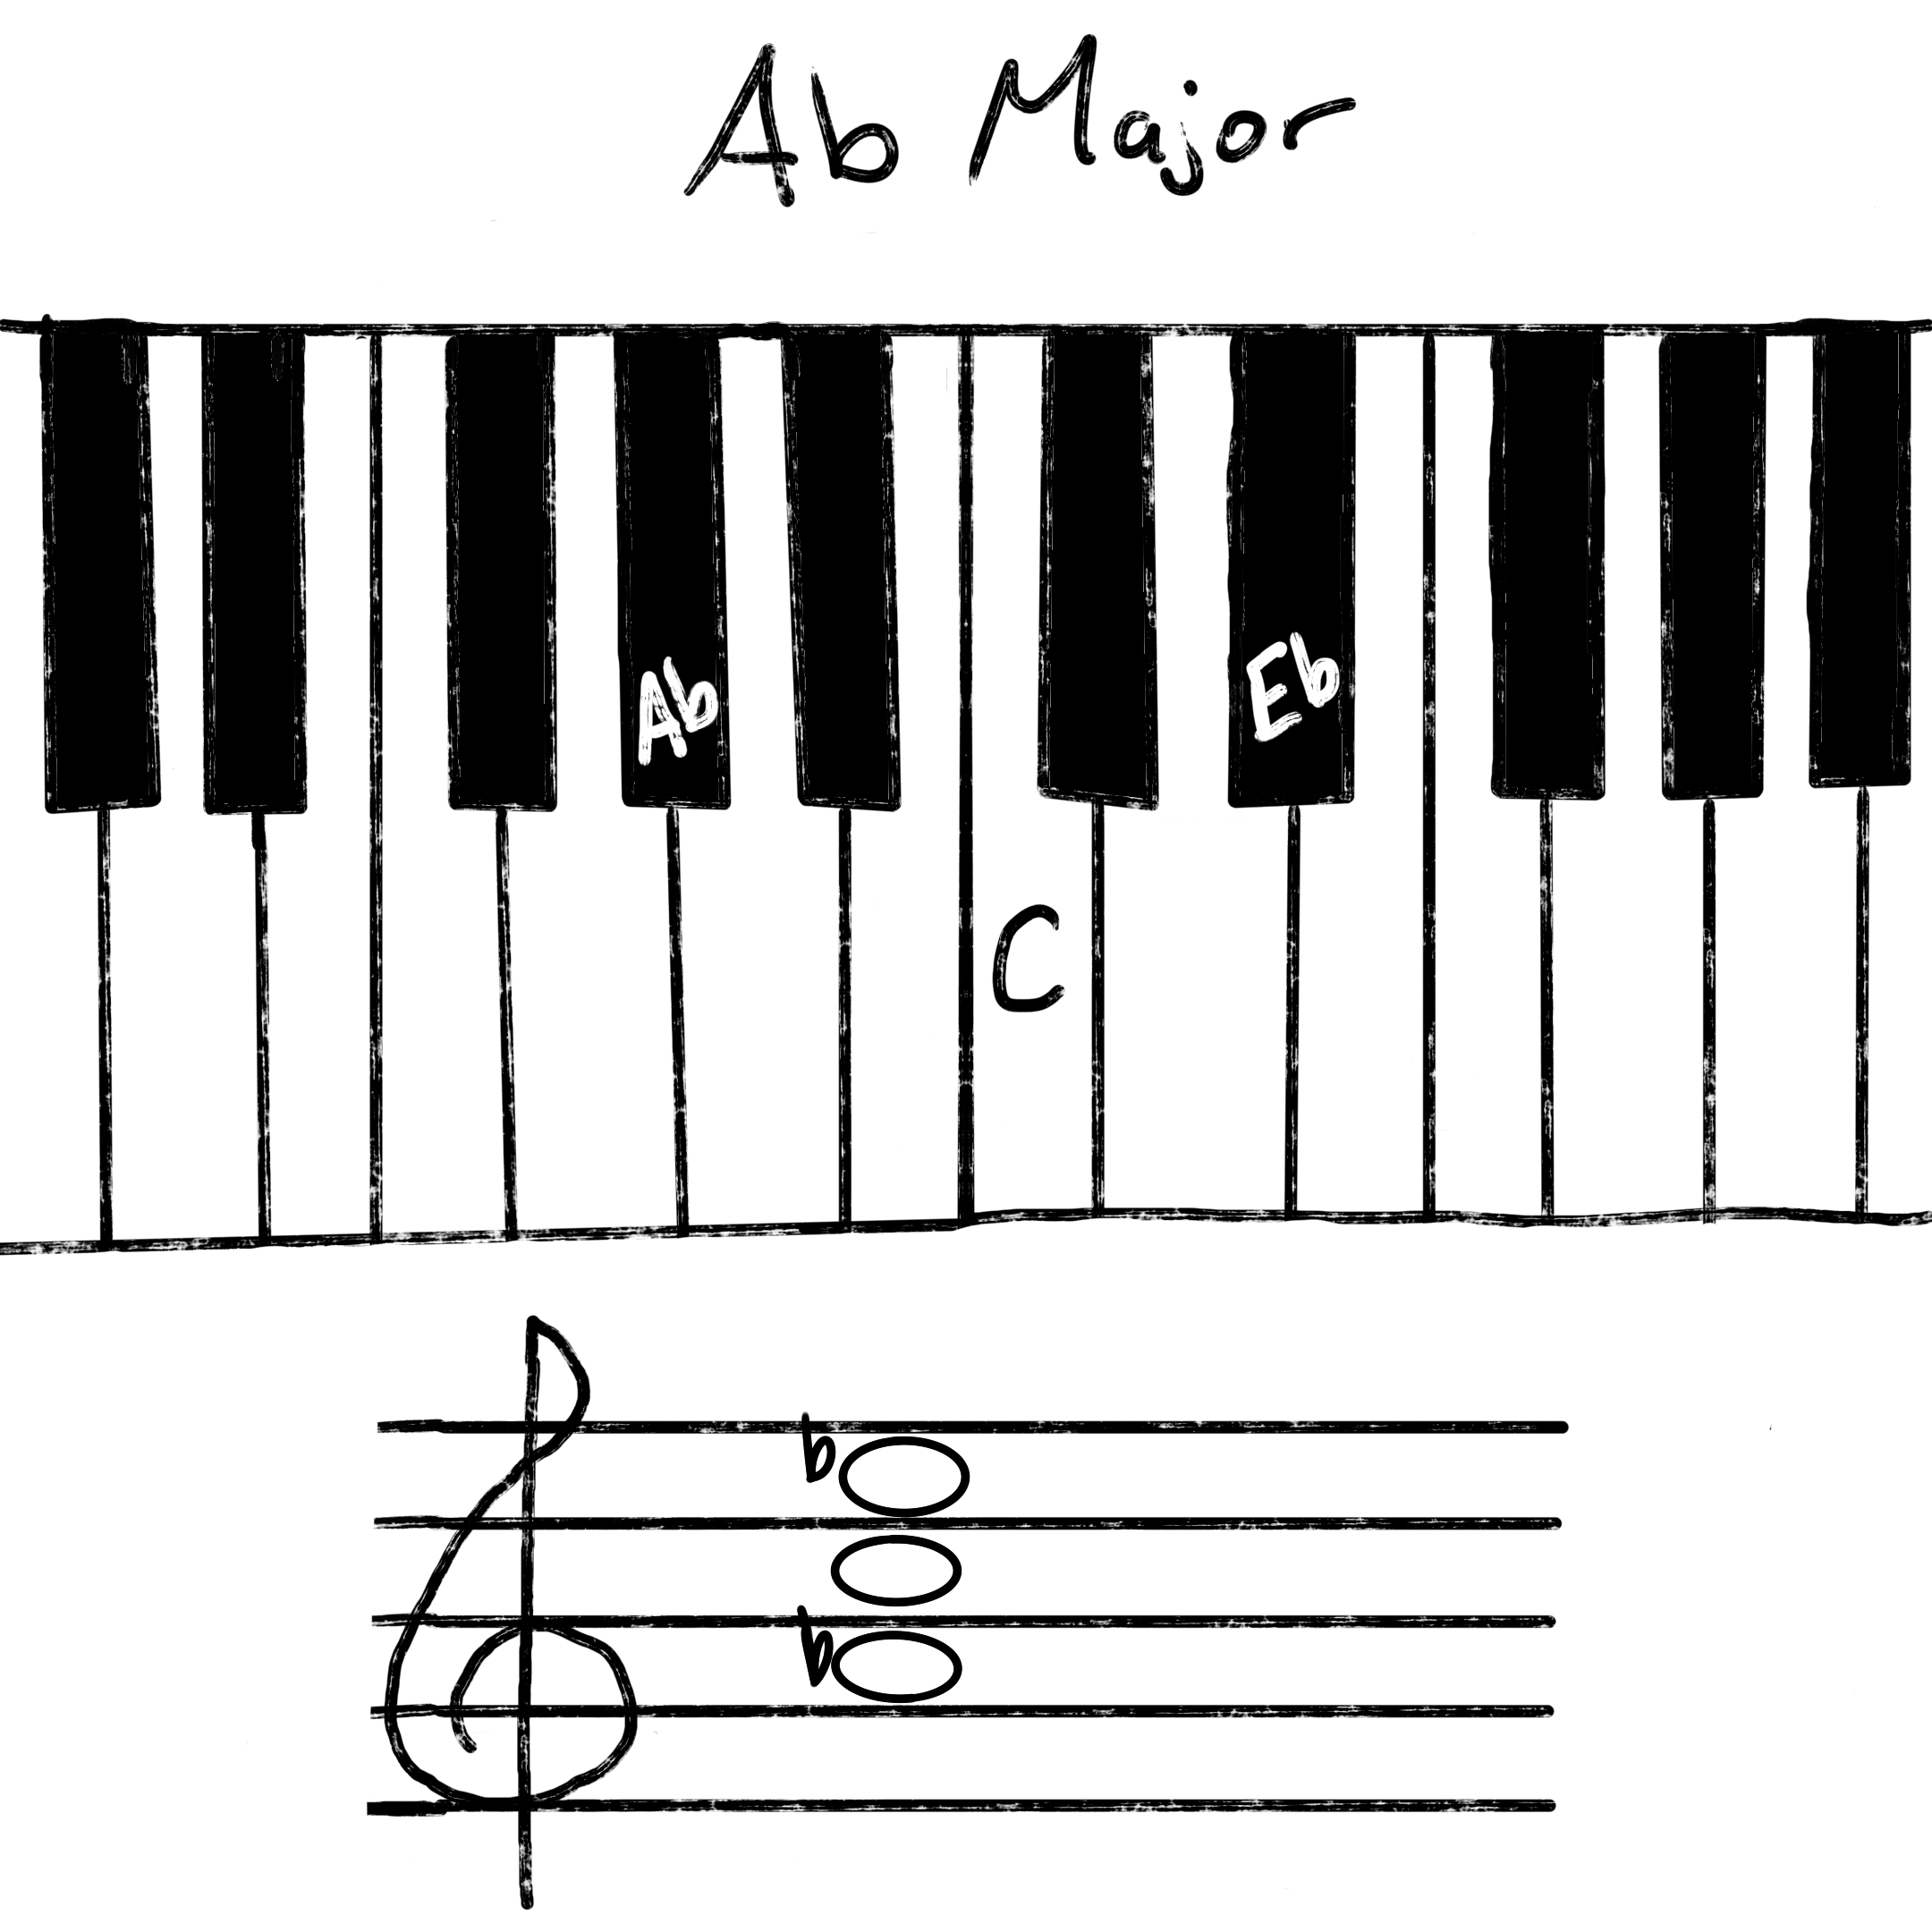 Ab chord